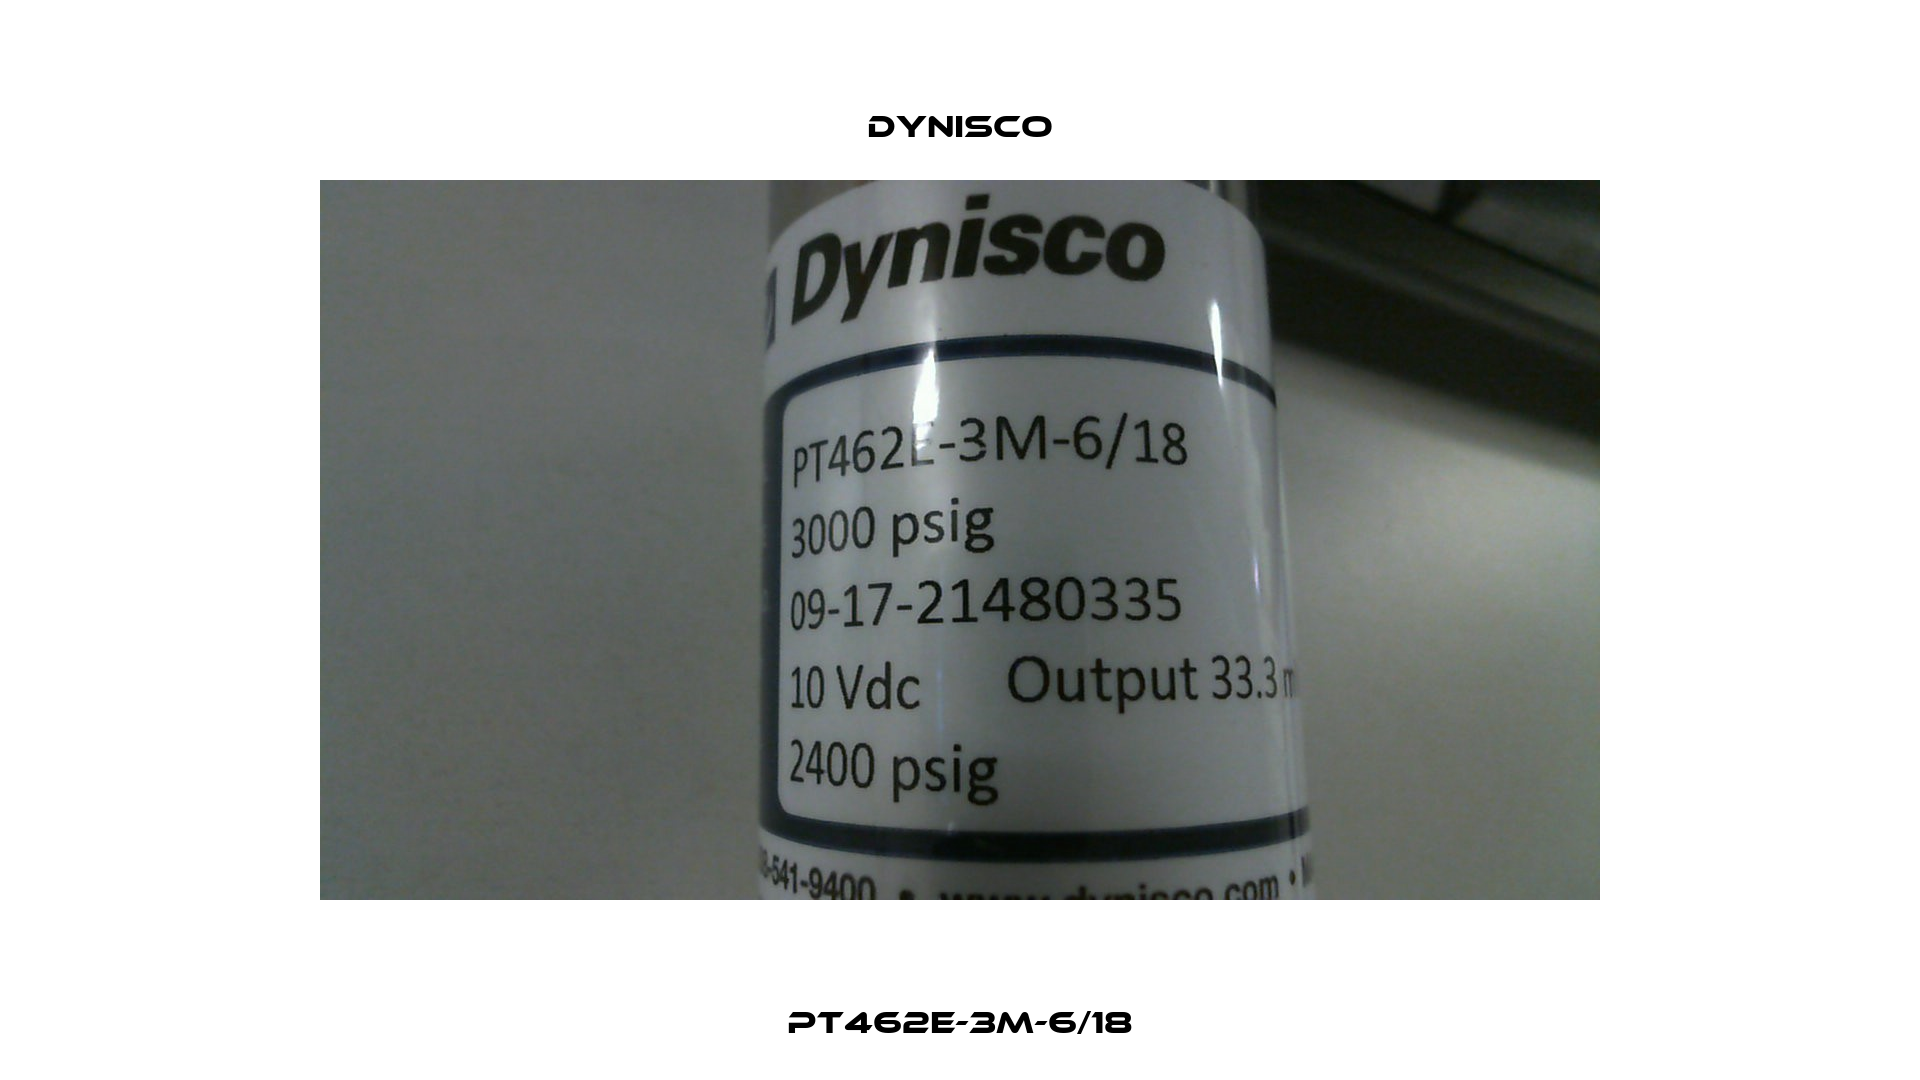 PT462E-3M-6/18 Dynisco